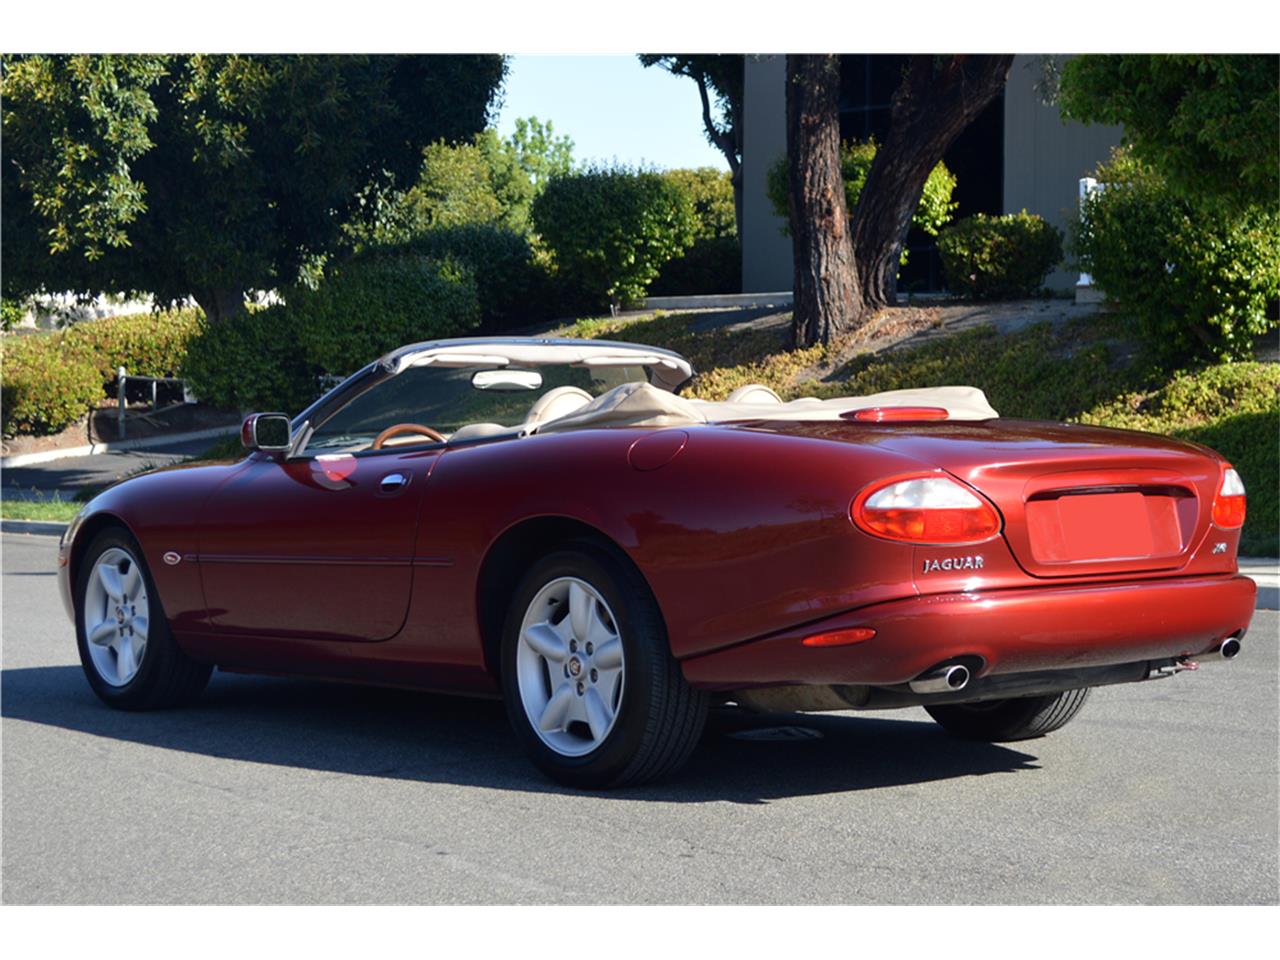 1999 Jaguar XK8 for Sale | ClassicCars.com | CC-1169900